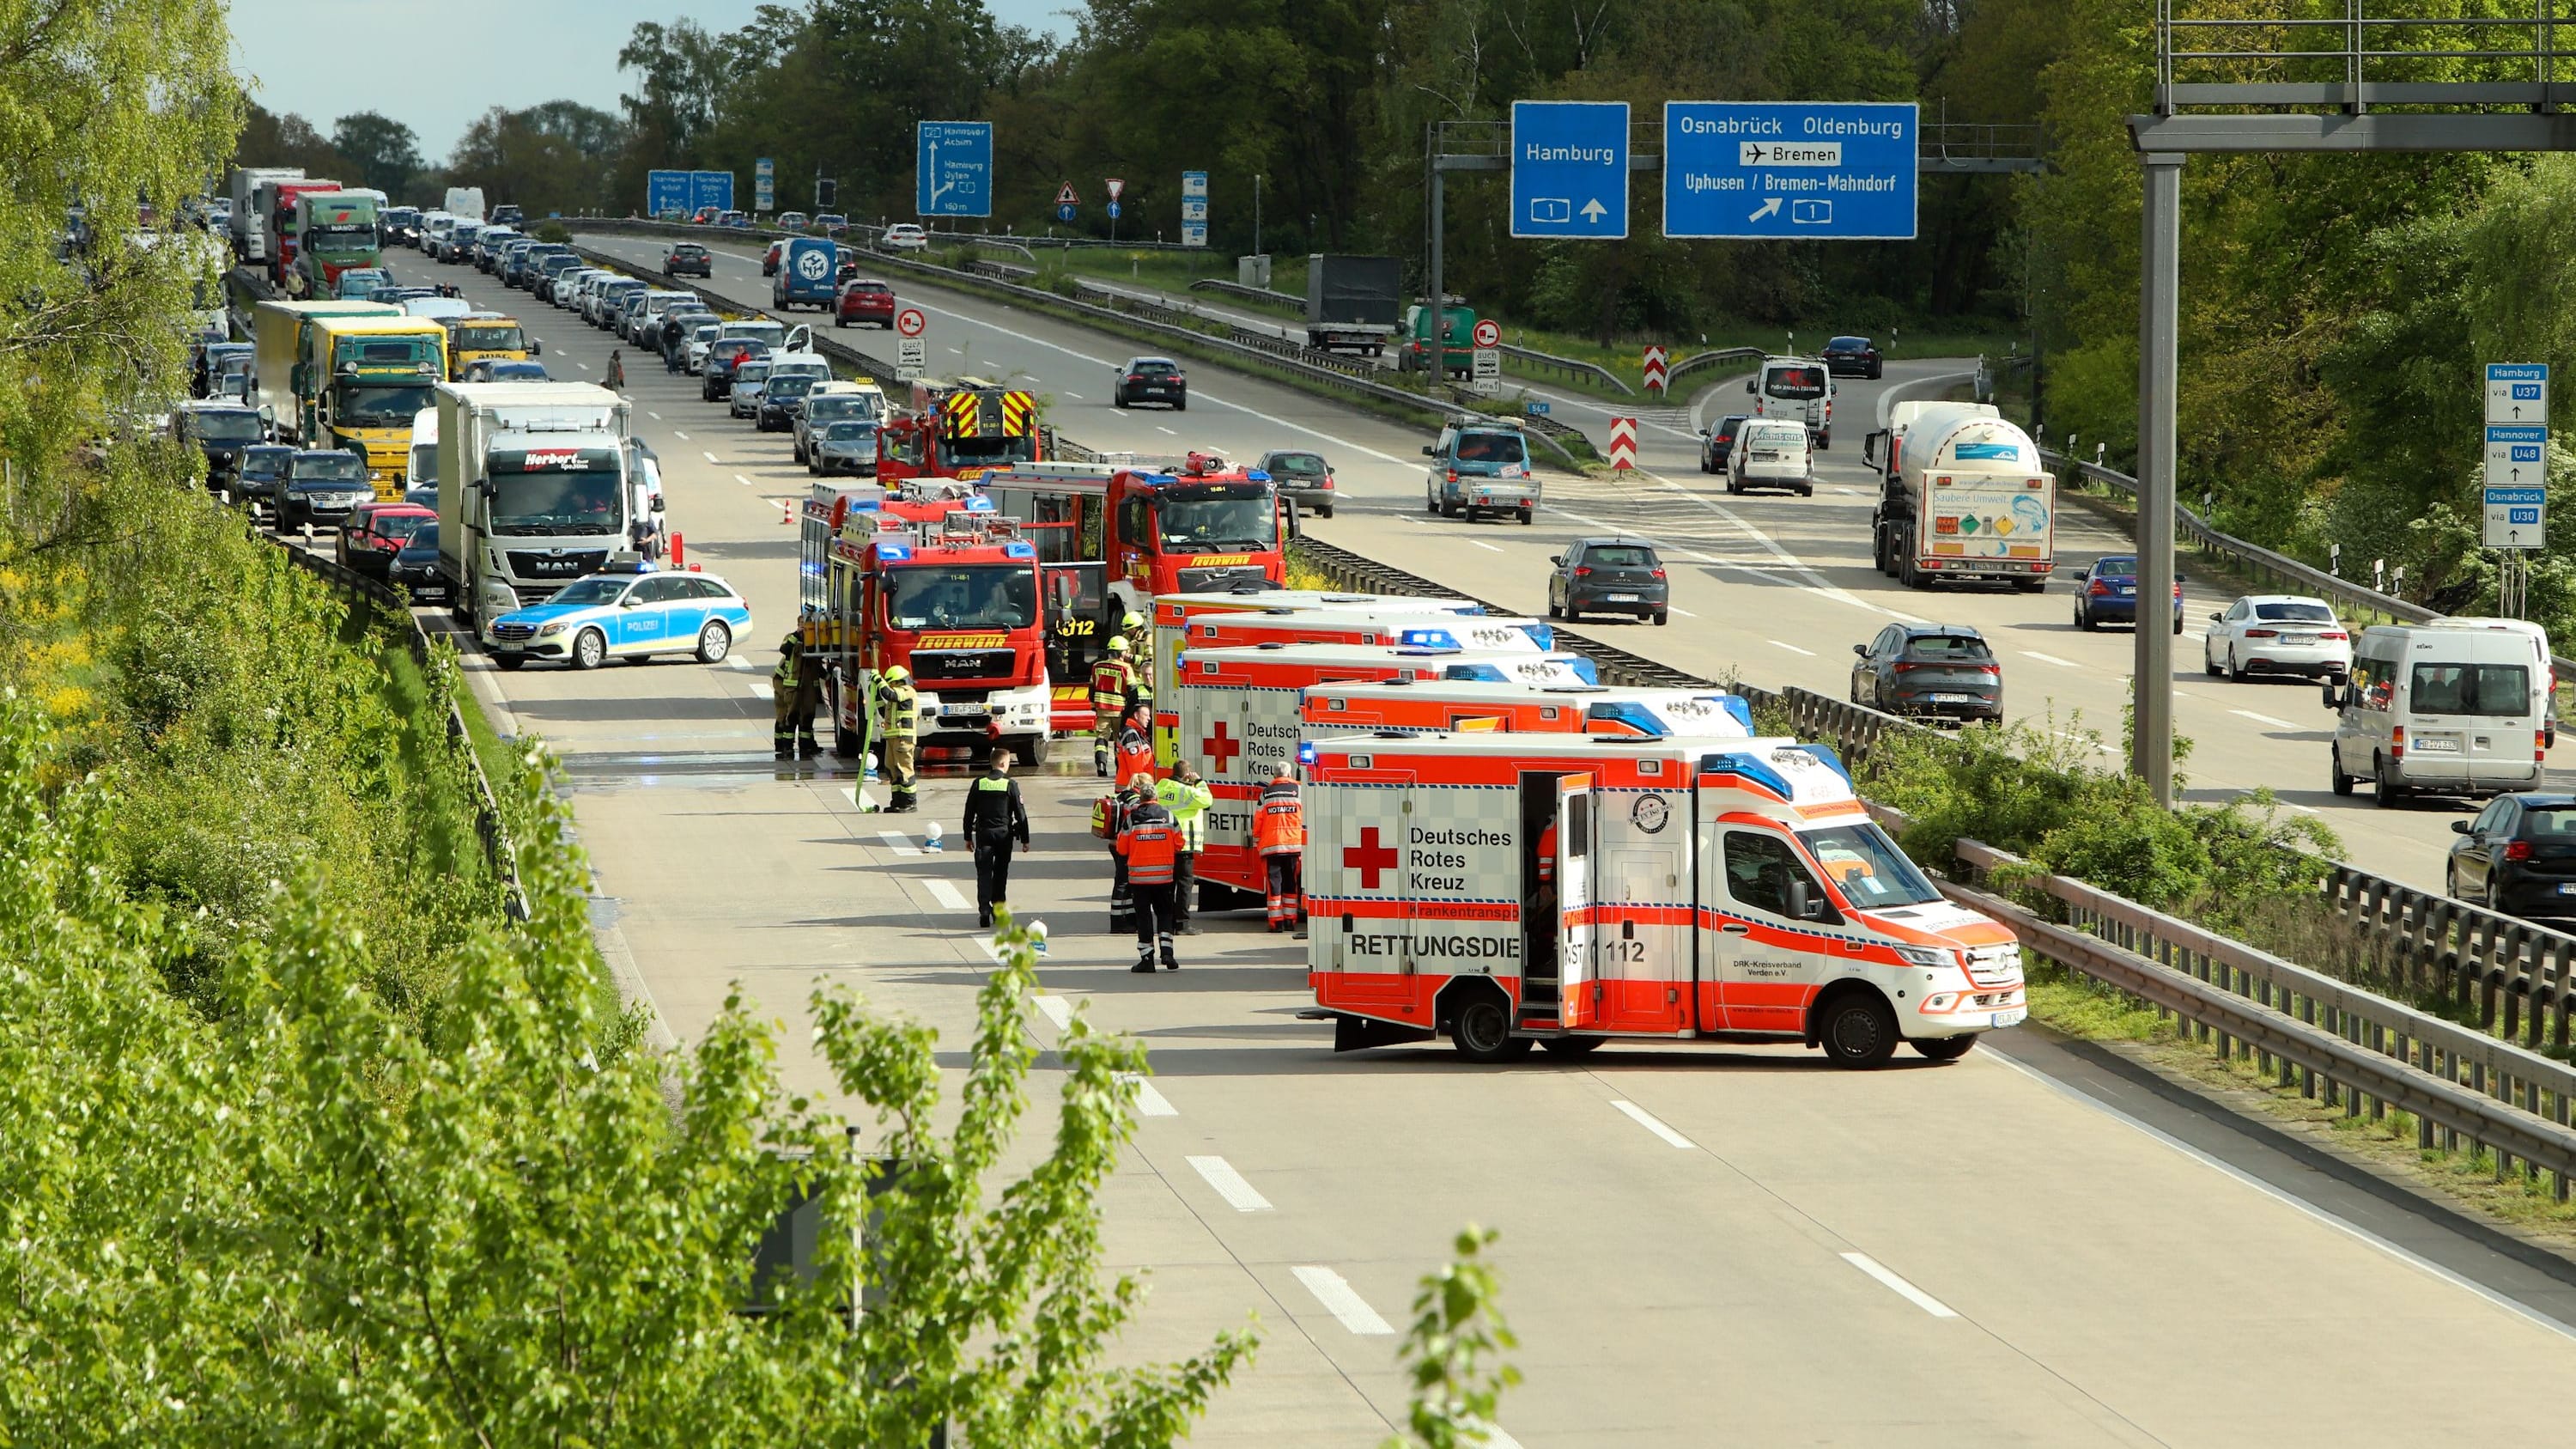 A27 bei Bremen: Autofahrer übersieht Stauende – Vollsperrung